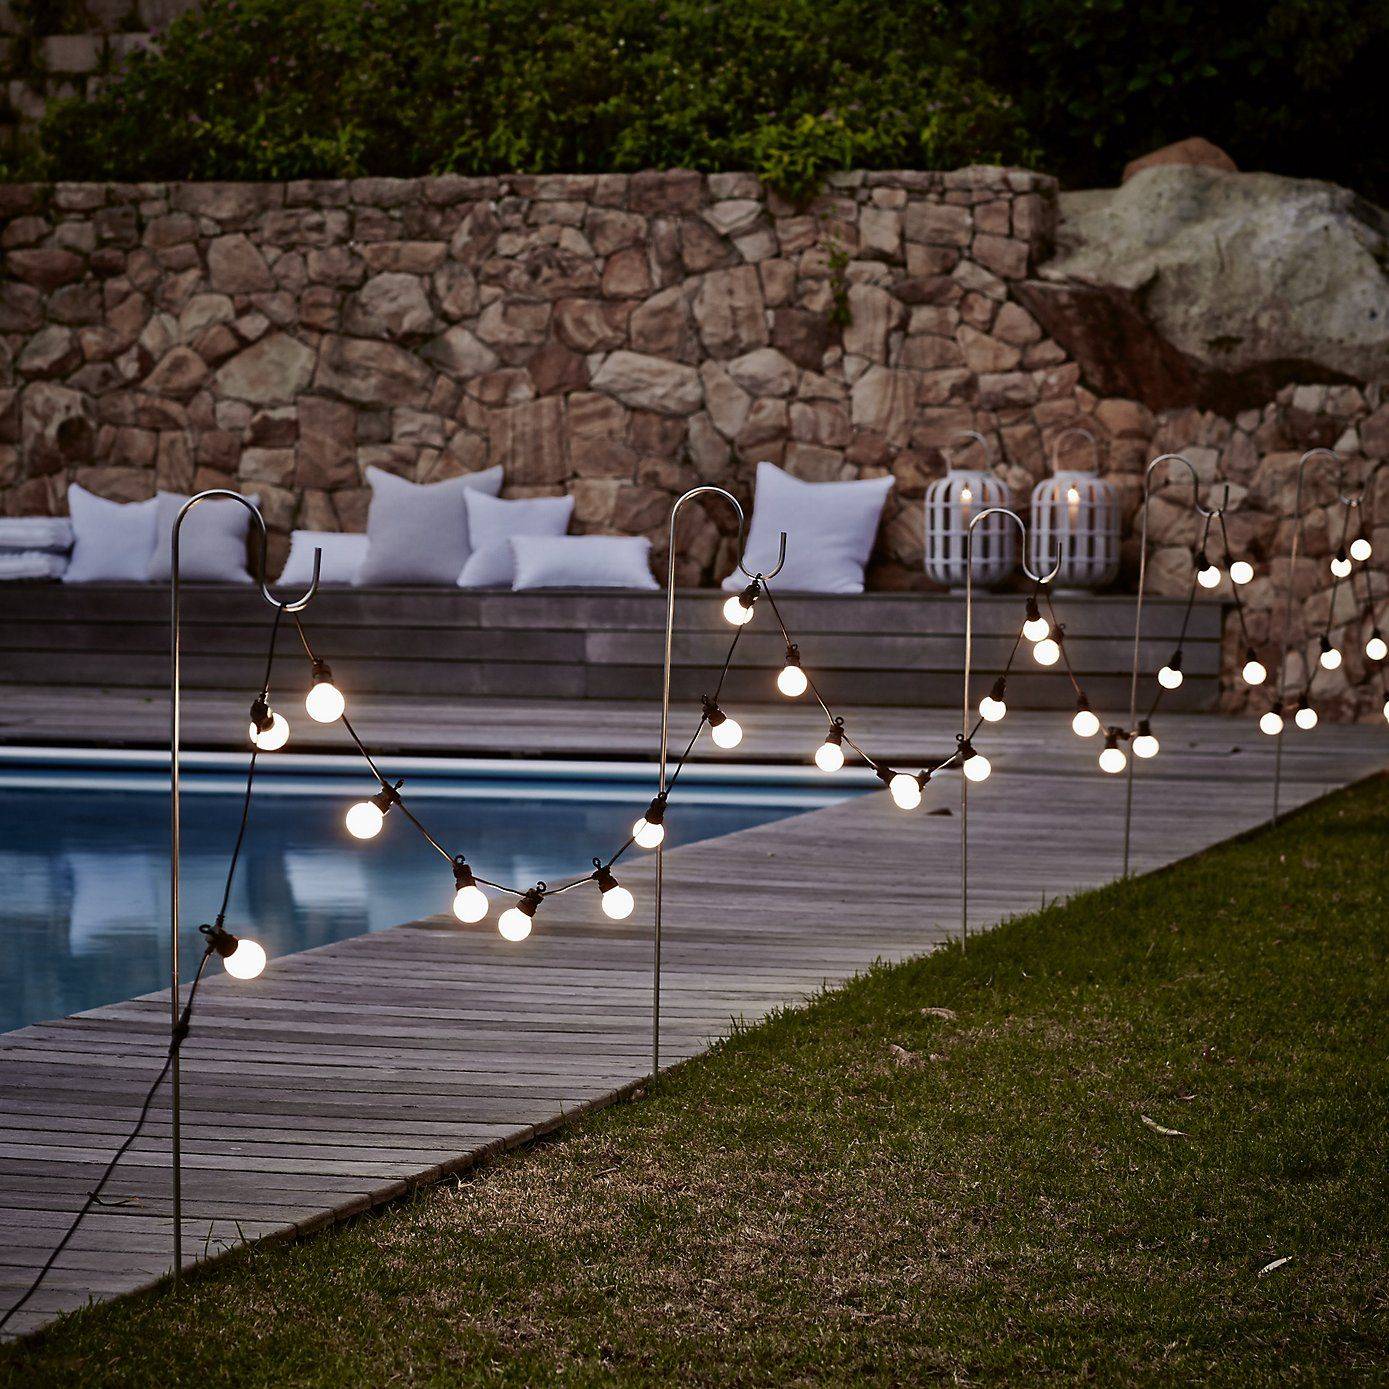 Light bulbs Along with Pool